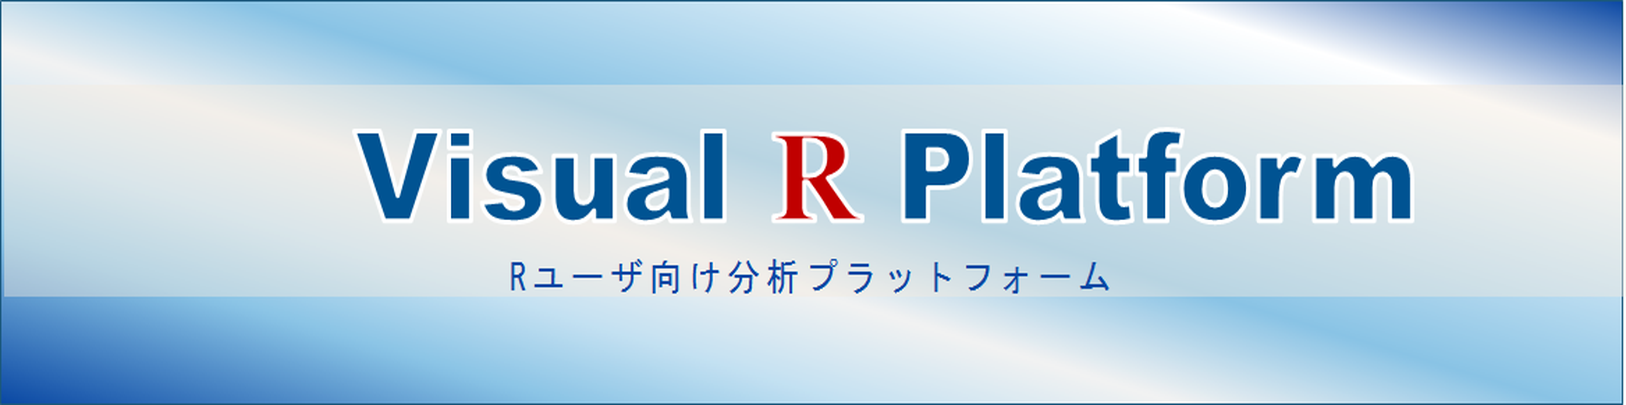 Rユーザ向け分析プラットフォームVisual R Platform